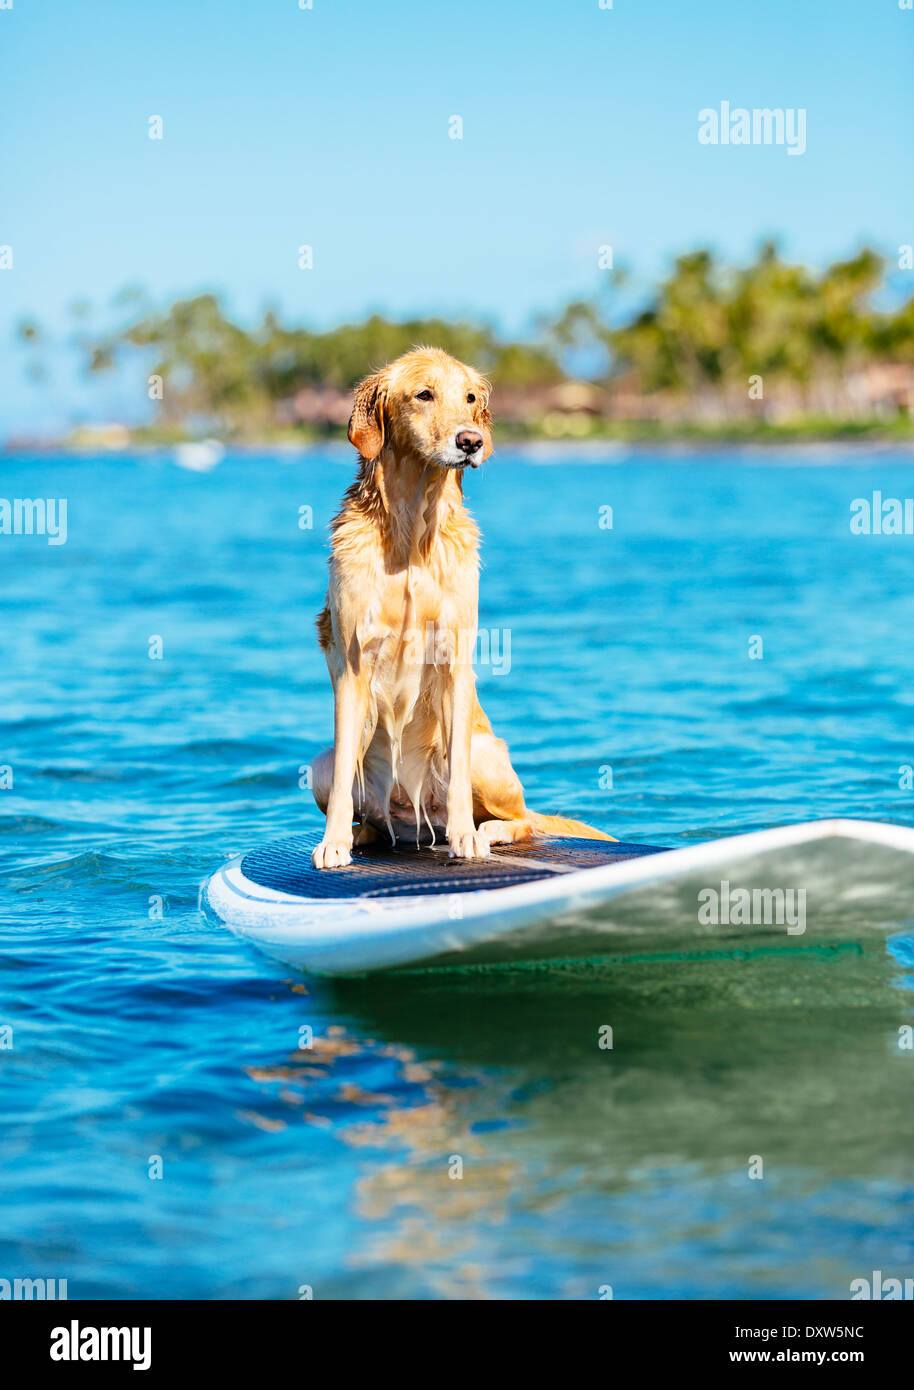 Surf Dog, glückliche junge Golden Retriever auf Surfbrett Stockfoto